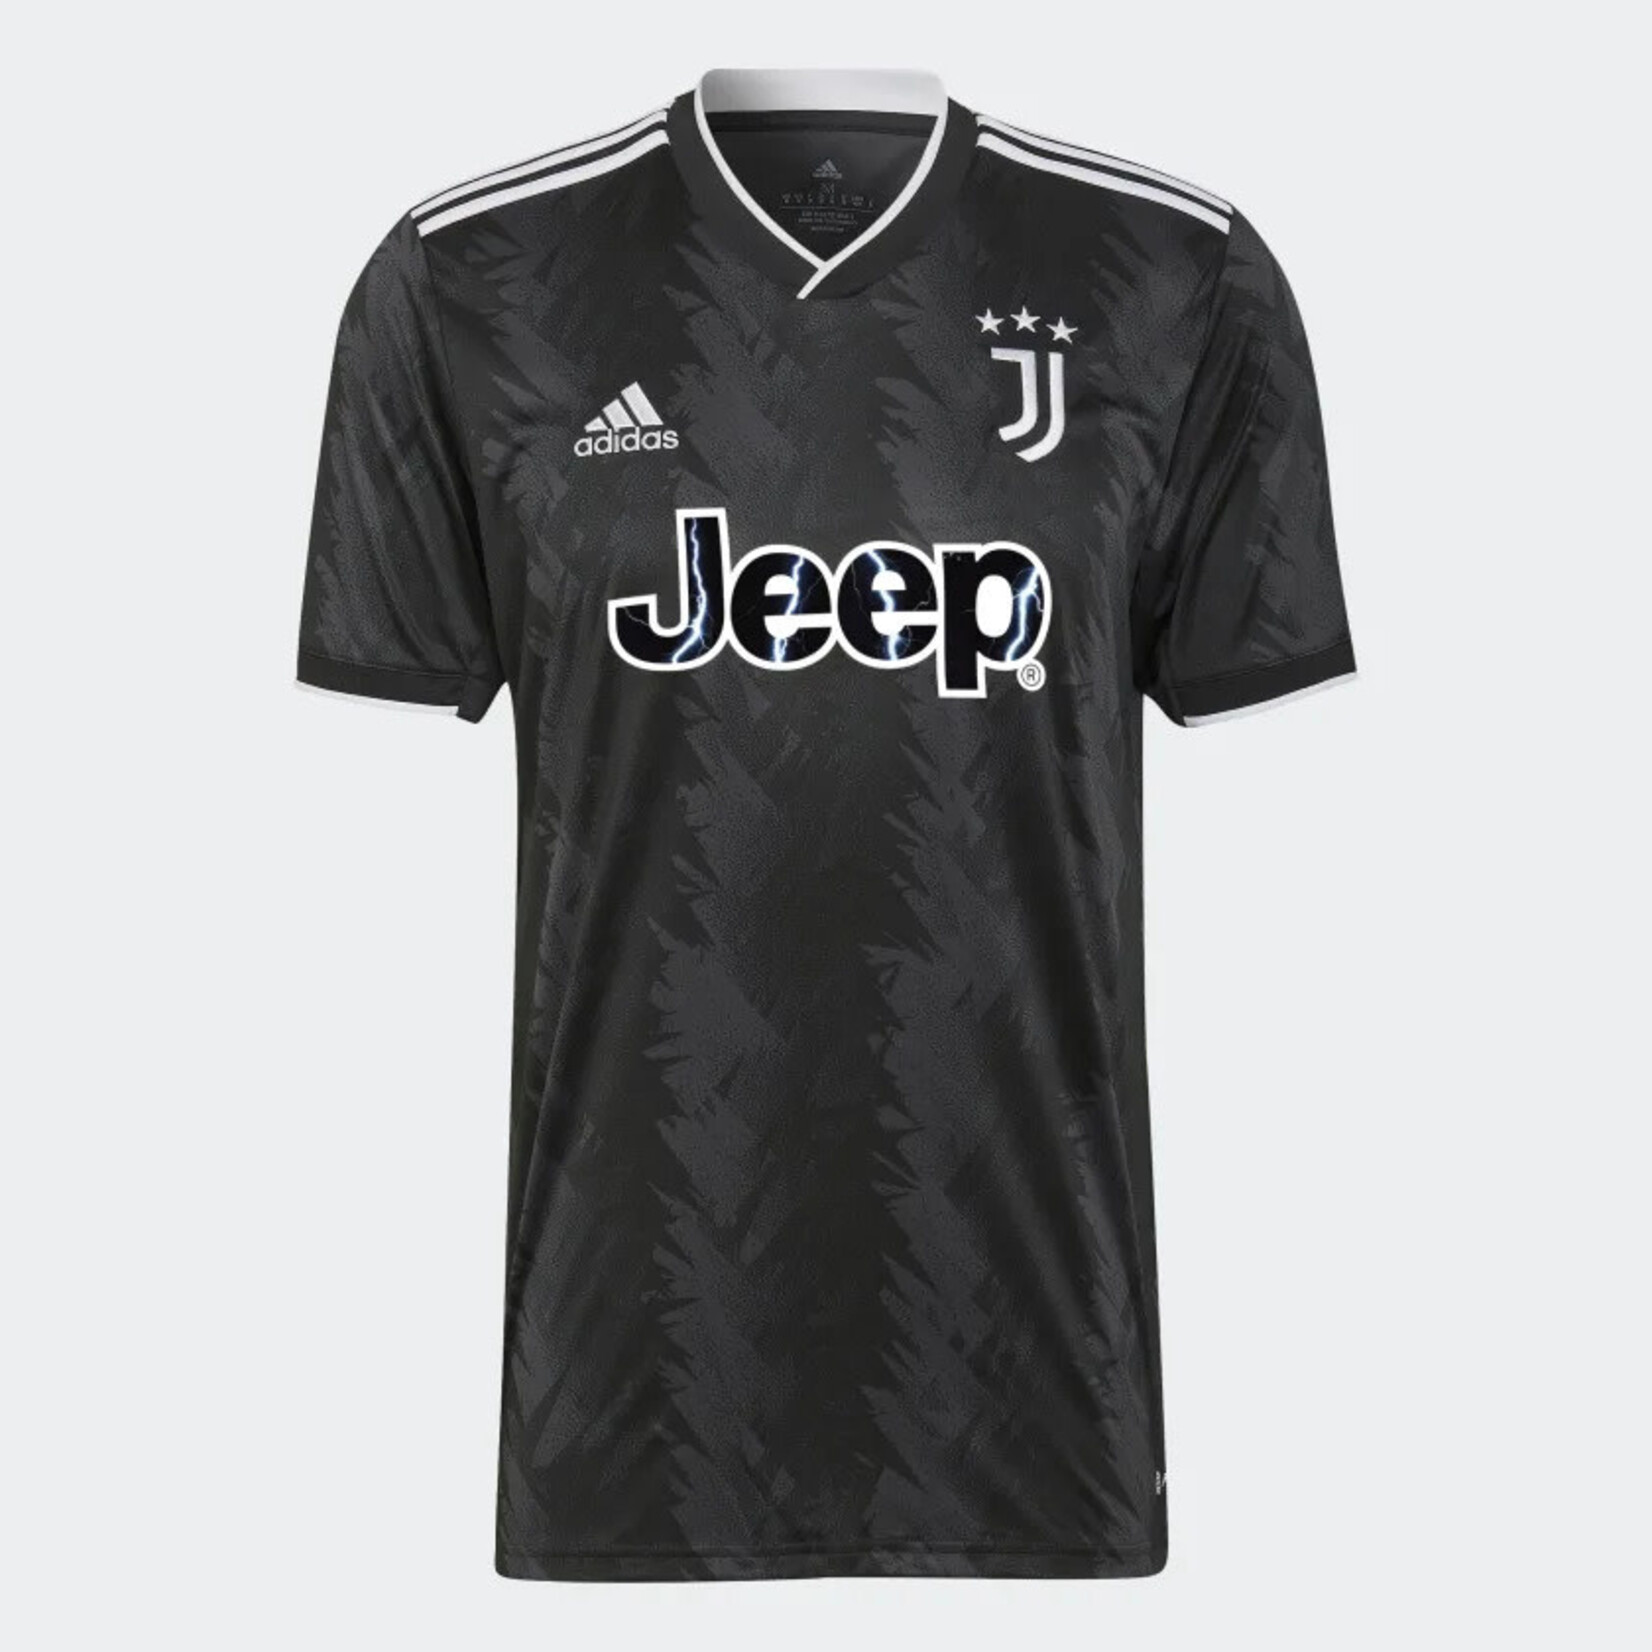 Adidas Juventus 22/23 Away Jersey Adult